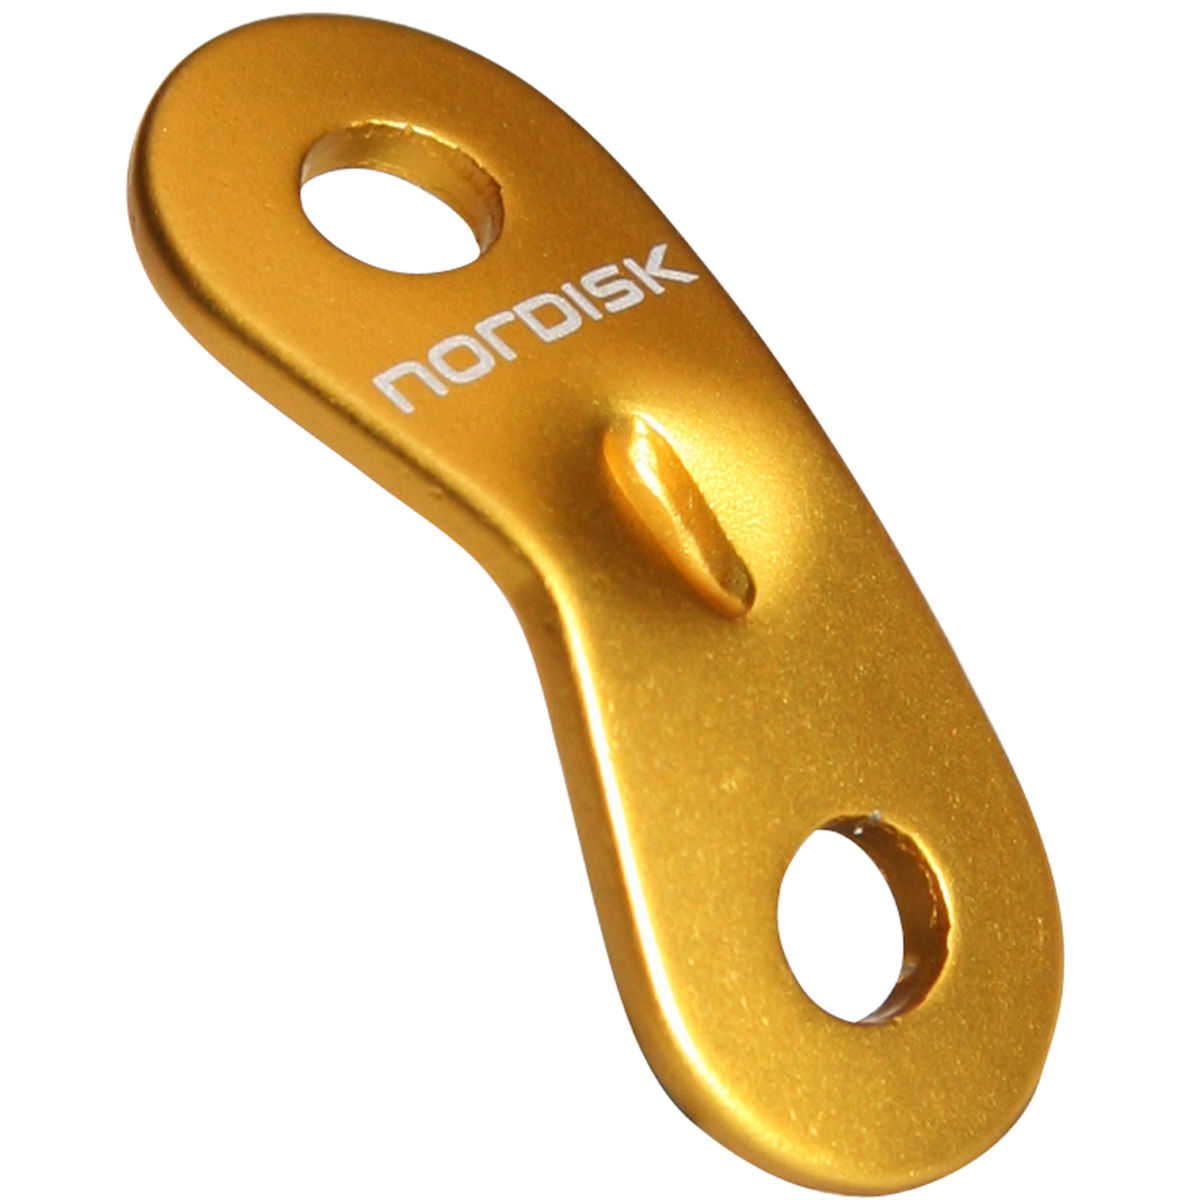 Deslizador de aluminio para tienda Nordisk (10 unidades) - Vientos y cuerdas